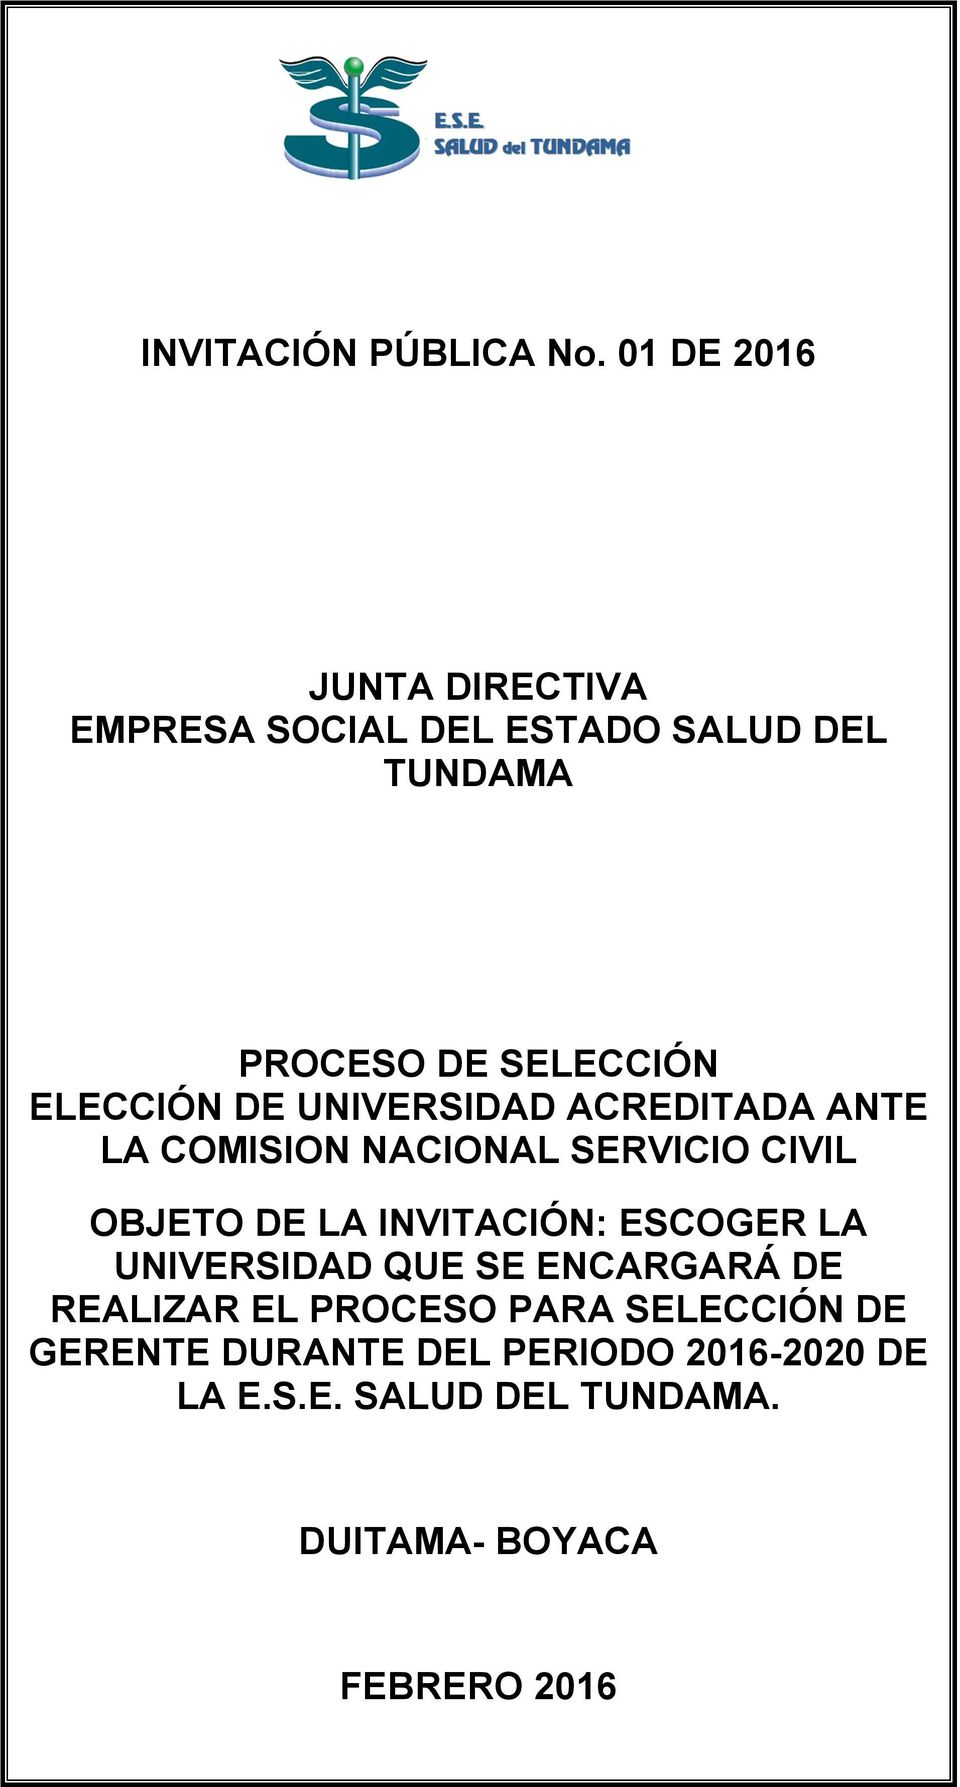 ELECCIÓN DE UNIVERSIDAD ACREDITADA ANTE LA COMISION NACIONAL SERVICIO CIVIL OBJETO DE LA